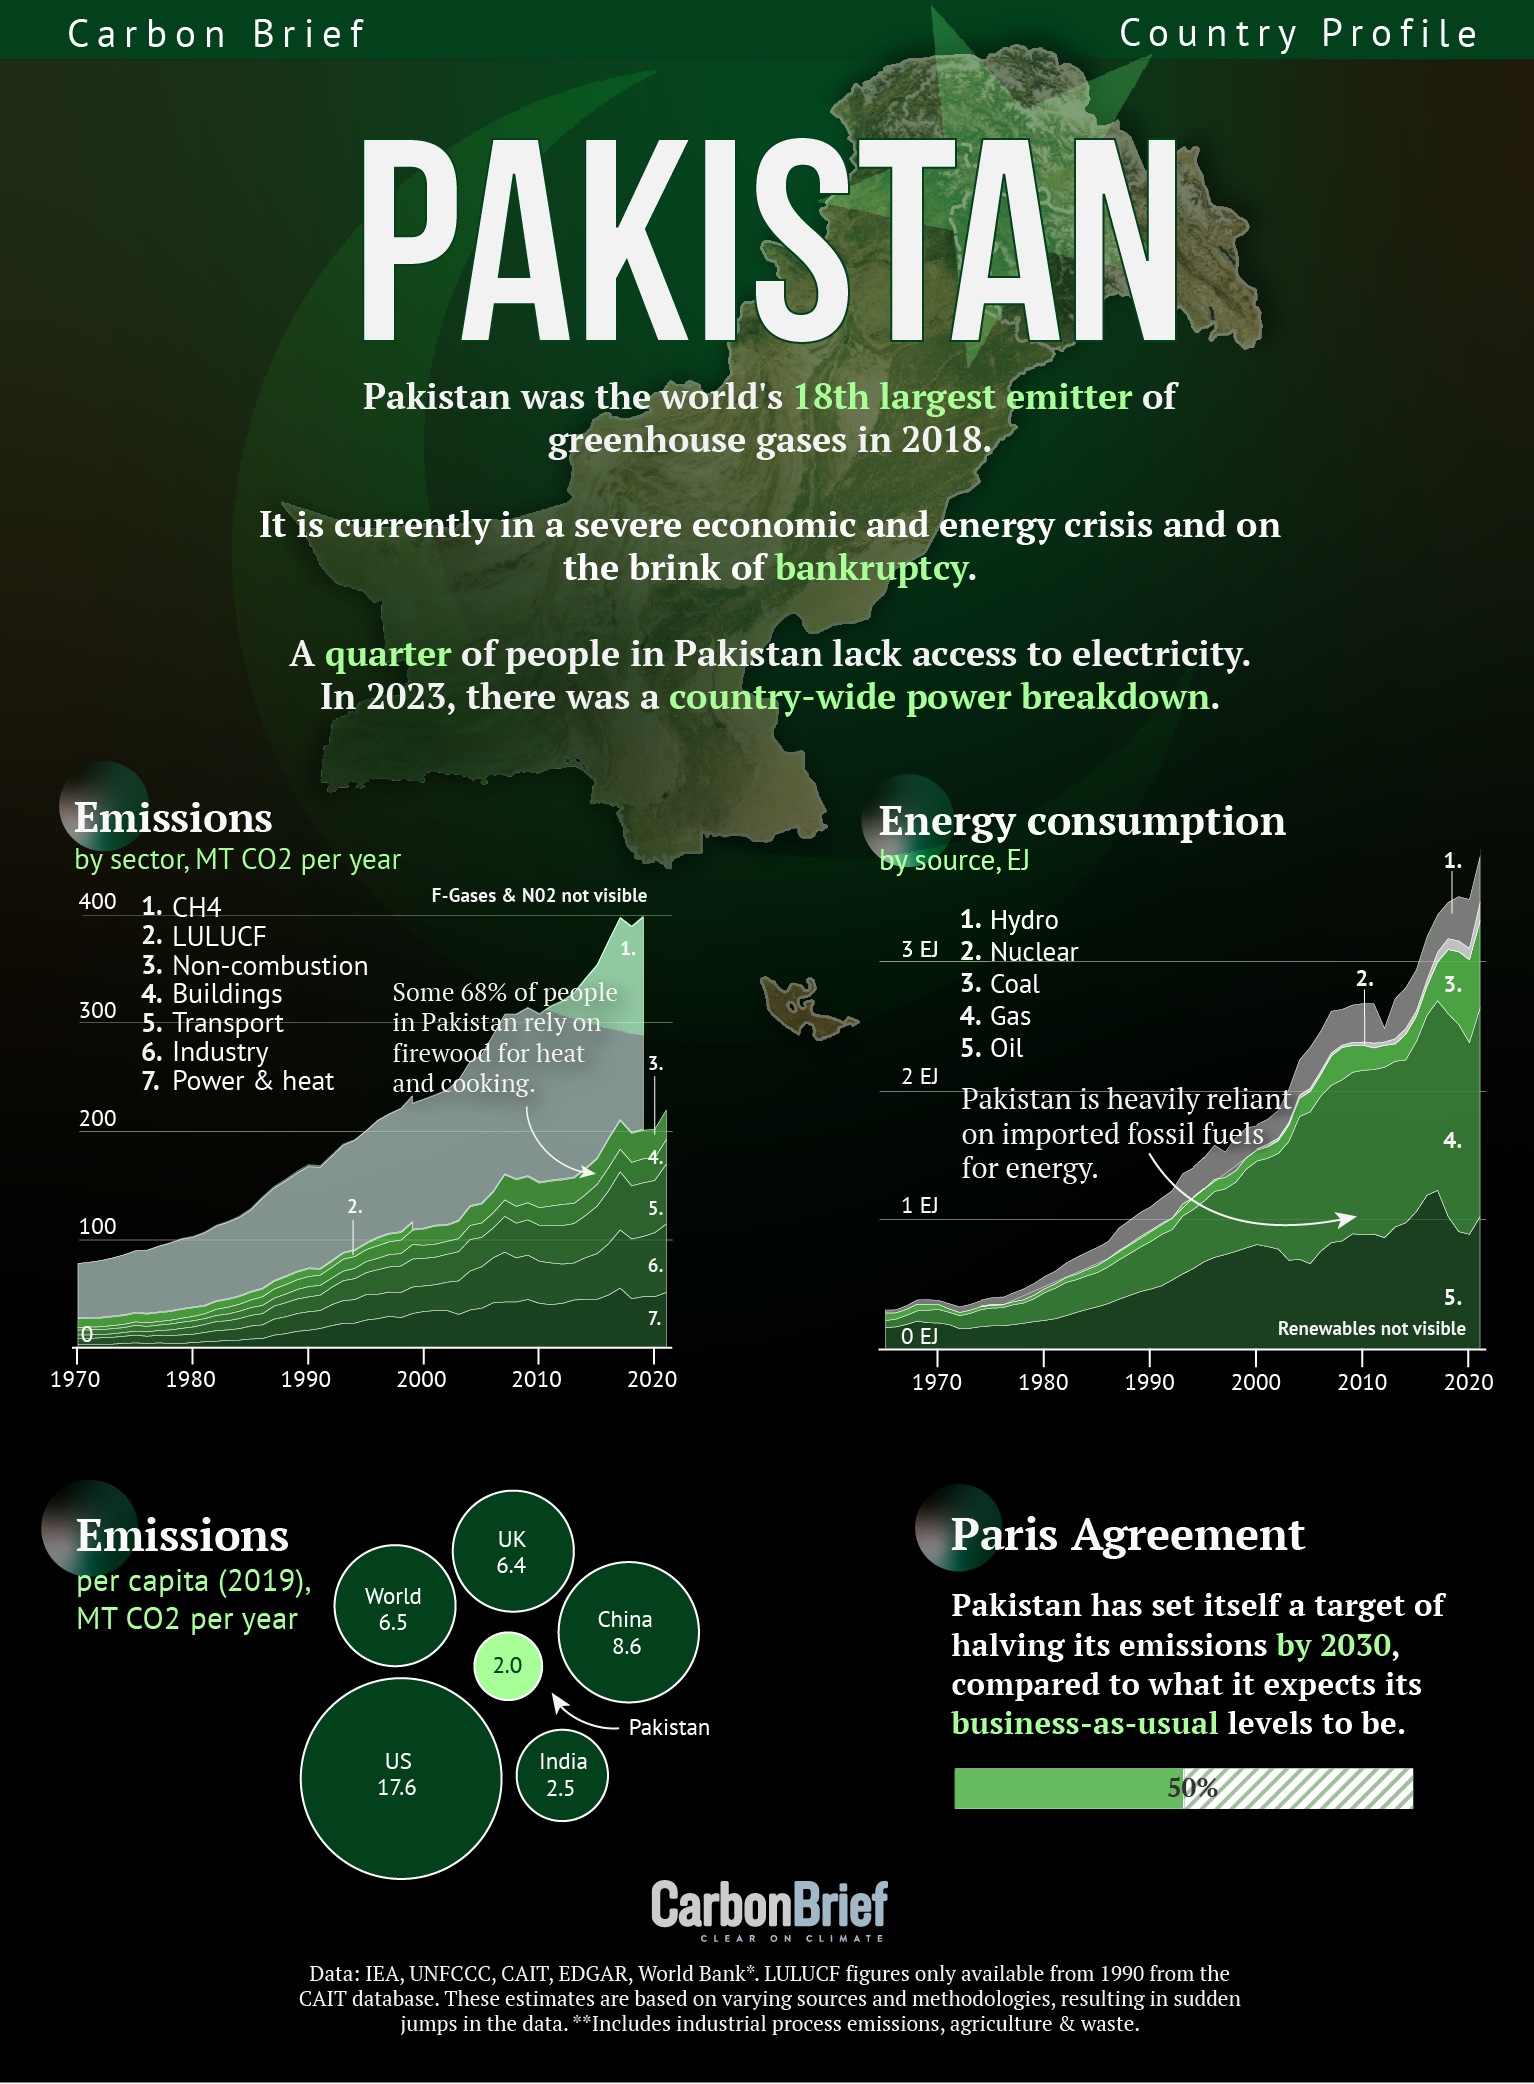 Profilul pe scurt de carbon: Pakistan